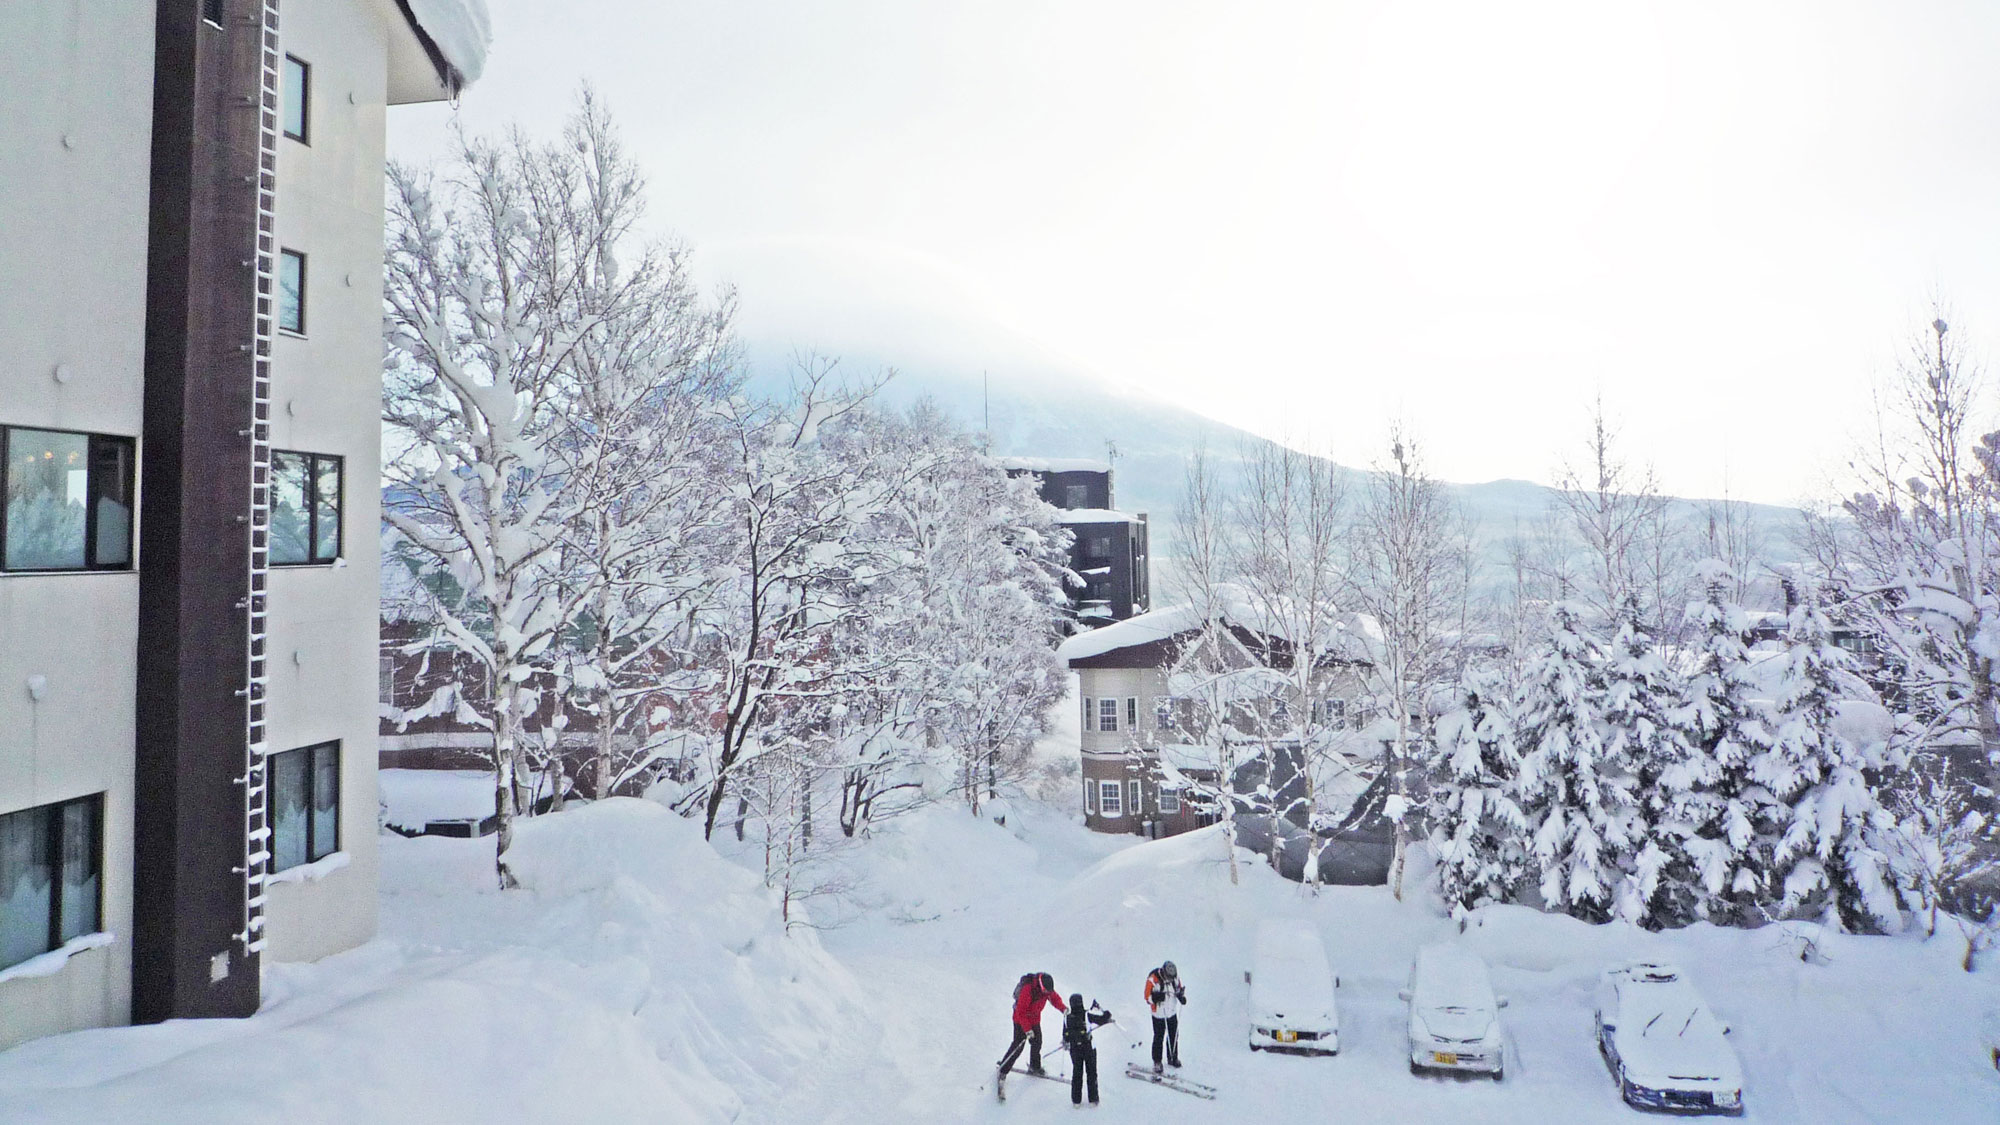 【スキーを履いて直行可能】ホテルからゲレンデは目の前。スキーを履いたまま向かうことができます。